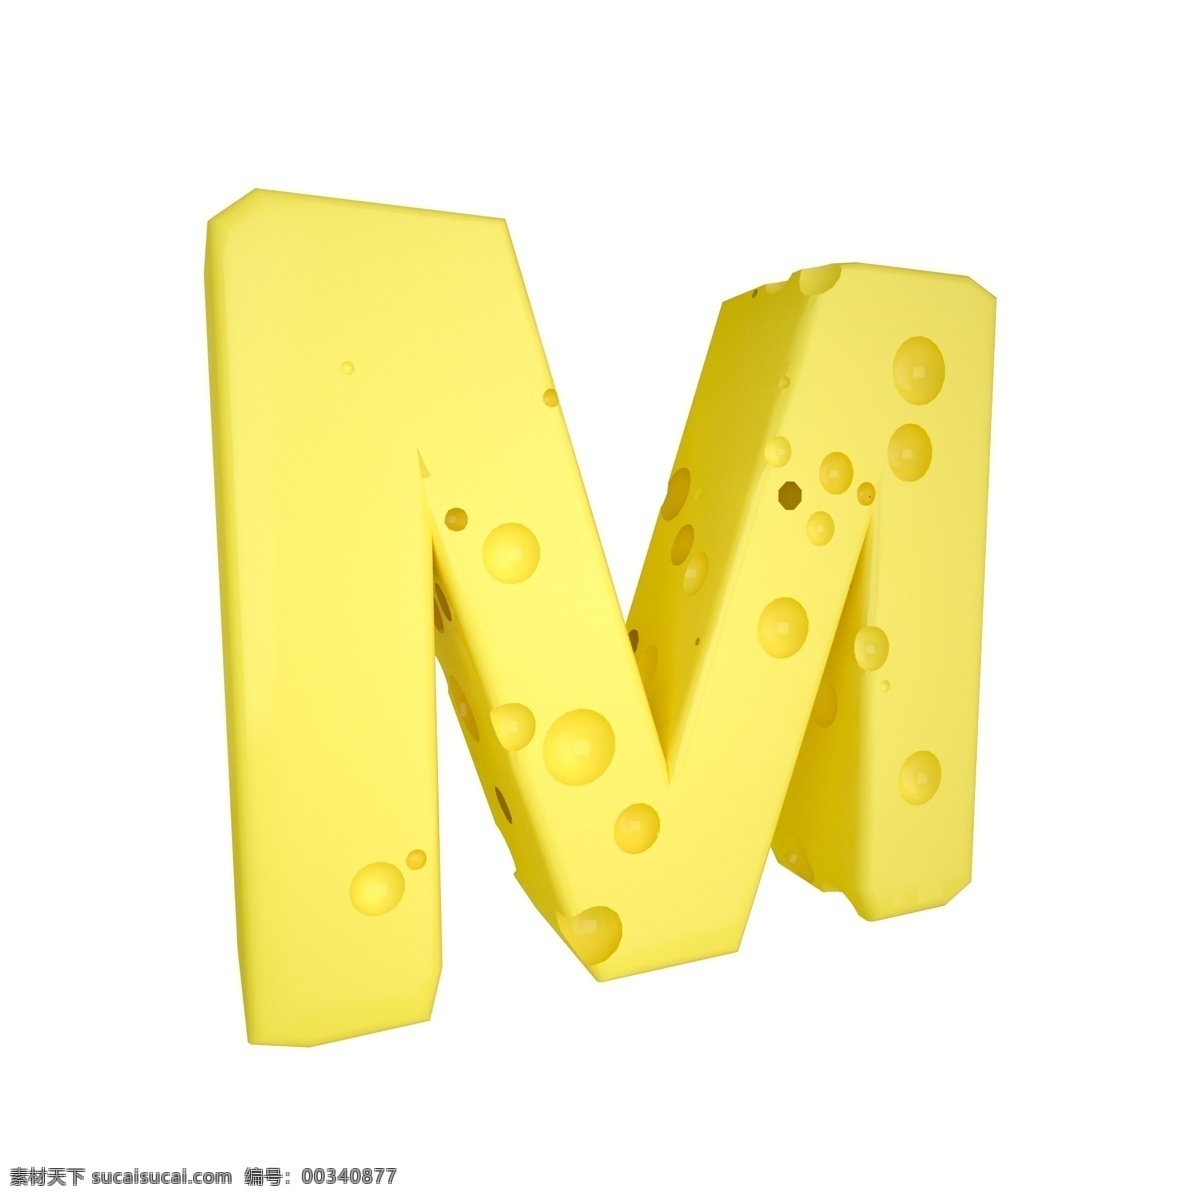 c4d 创意 奶酪 字母 m 装饰 3d 黄色 立体 食物 平面海报配图 电商淘宝装饰 可爱 柔和 字母m